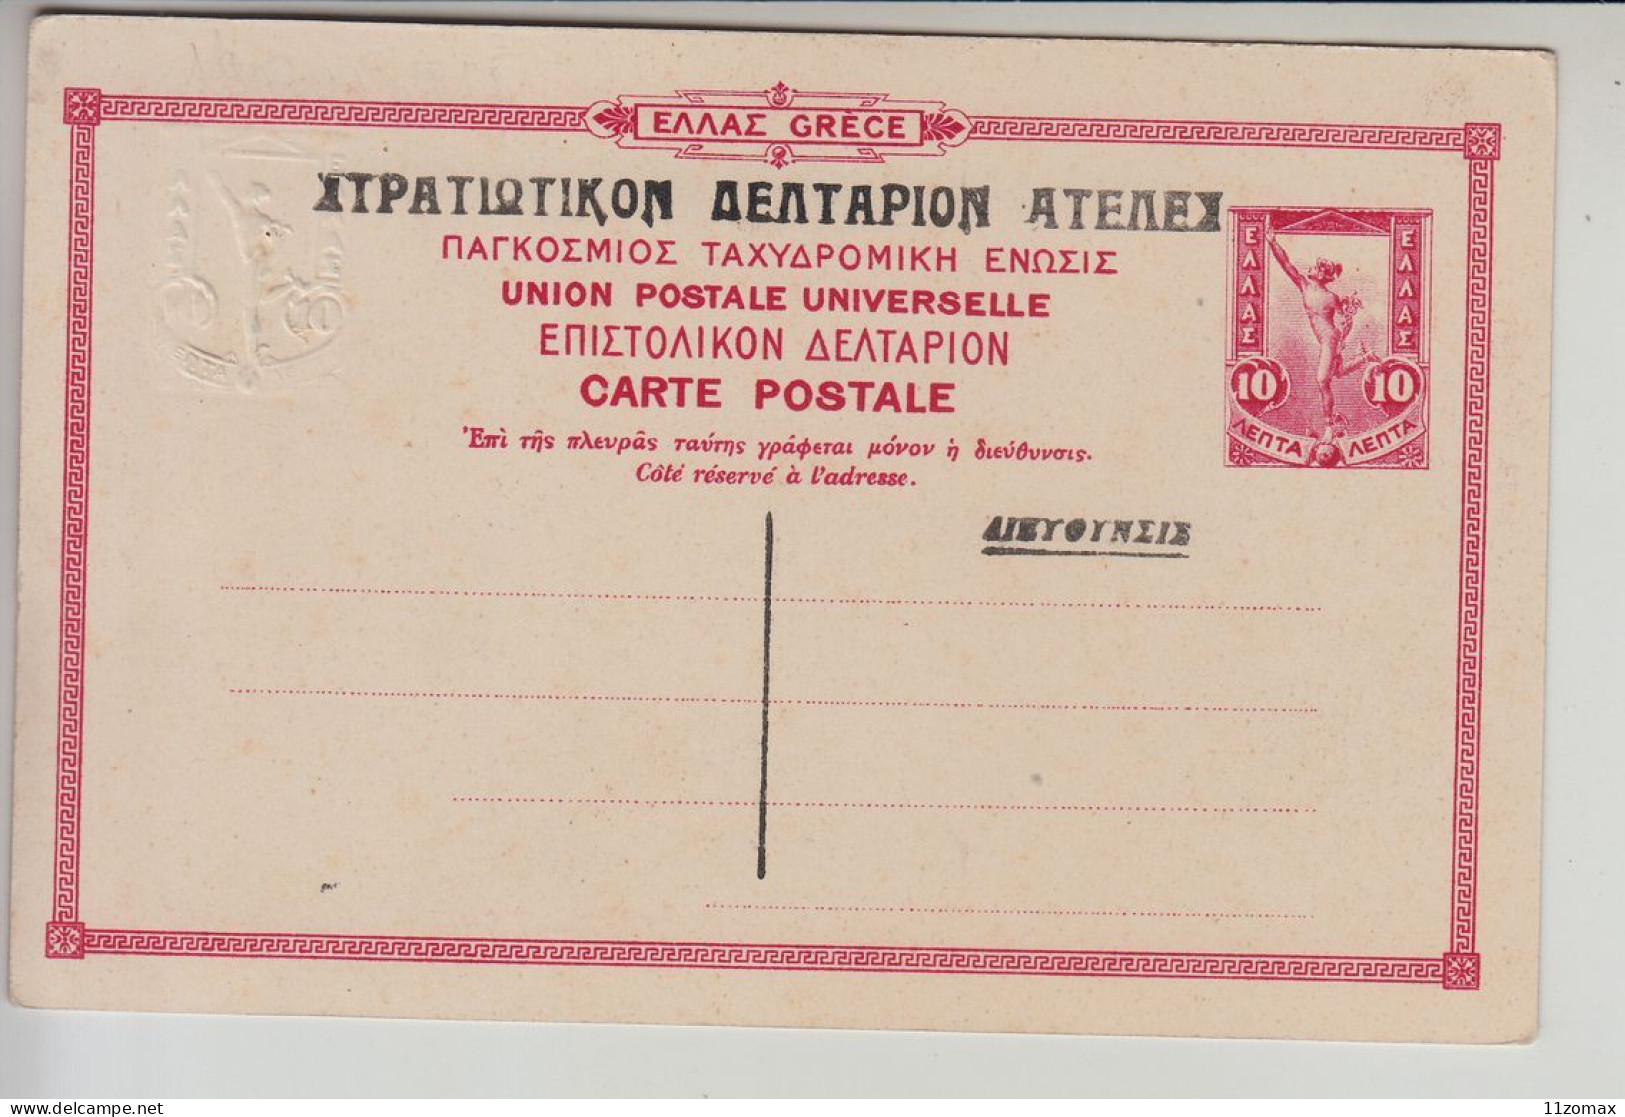 GRECE ENTIER 10A CARTE POSTALE CORFOU Vestibule De L'Achillion PC Postal Stationery NEAR MINT (Gr054) - Postal Stationery